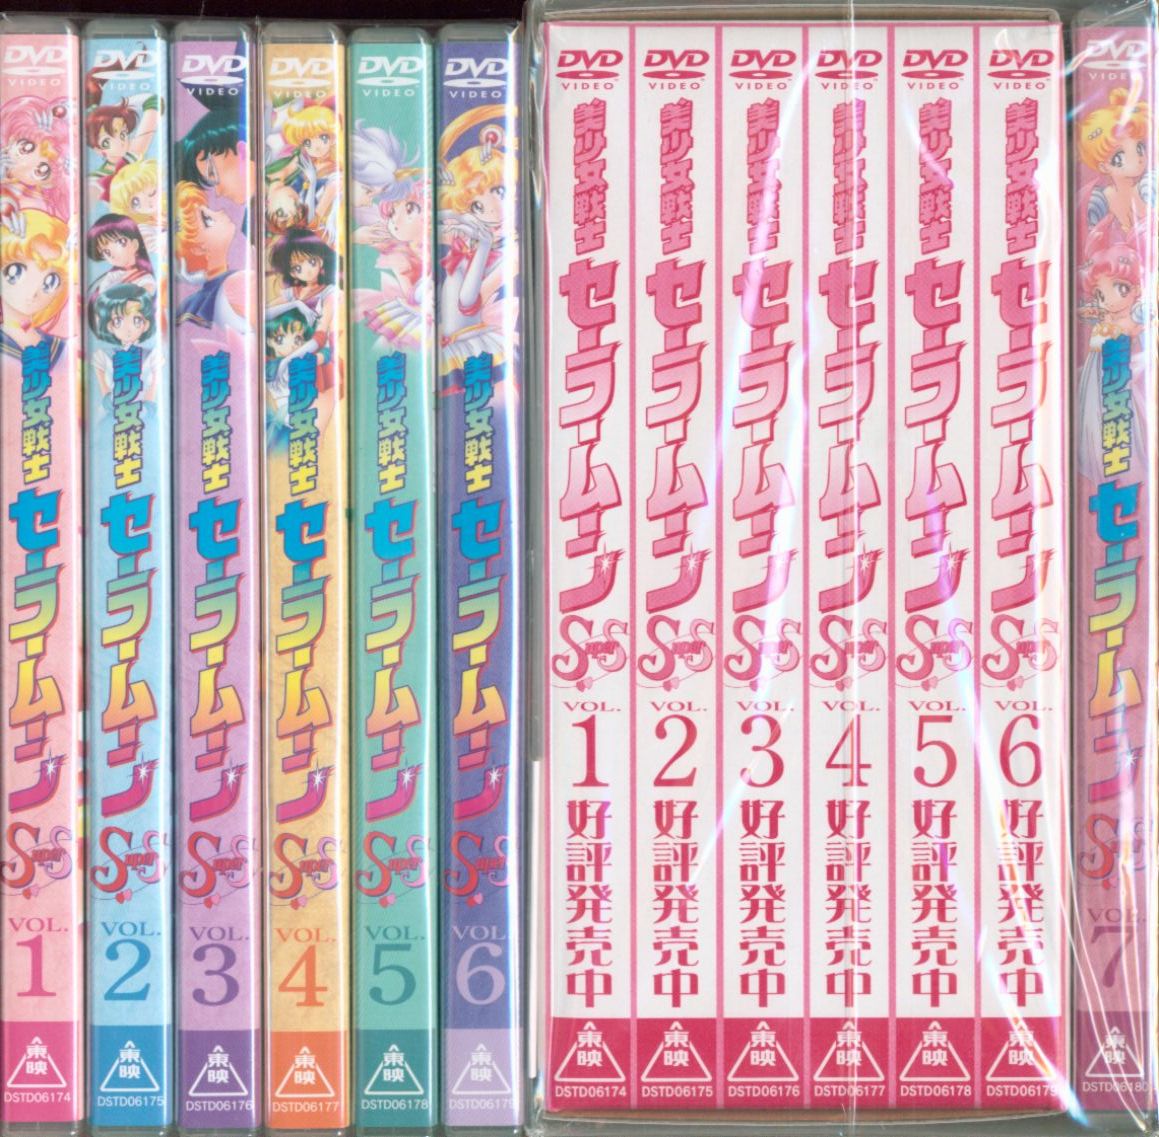 の通販なら 美少女戦士セーラームーンSuperS DVD 全7巻セット - DVD